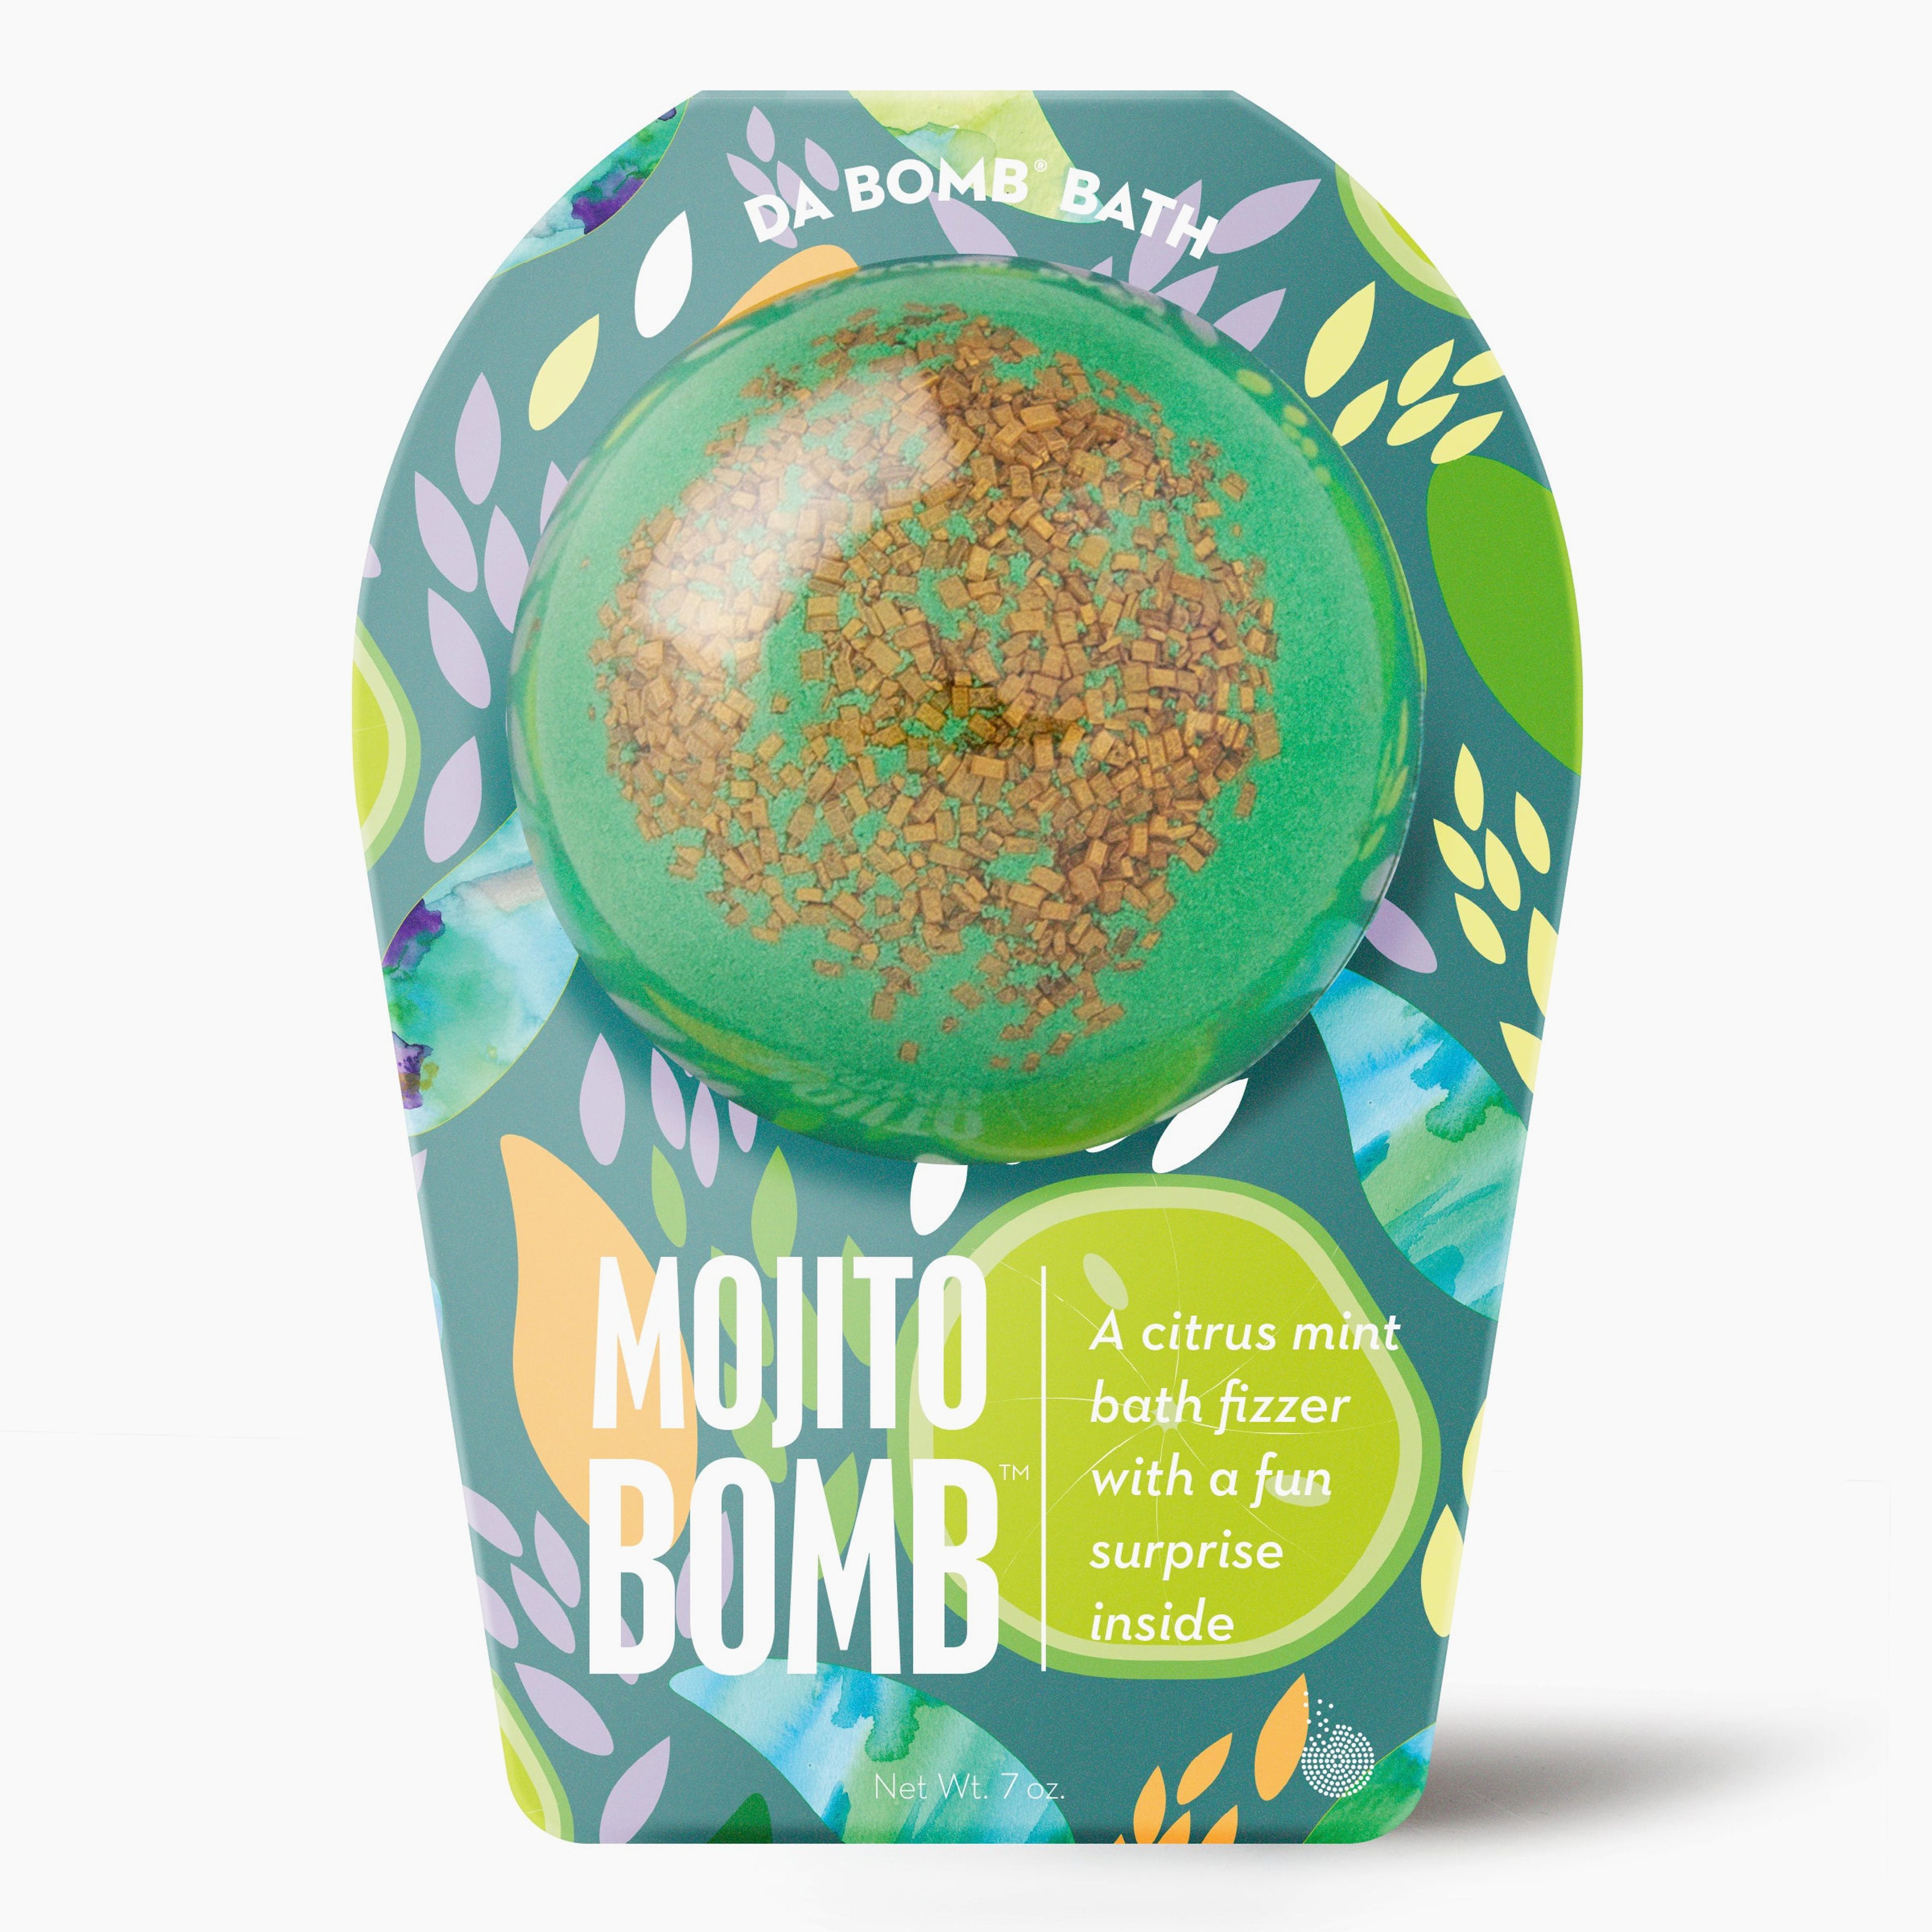 Mojito Bomb